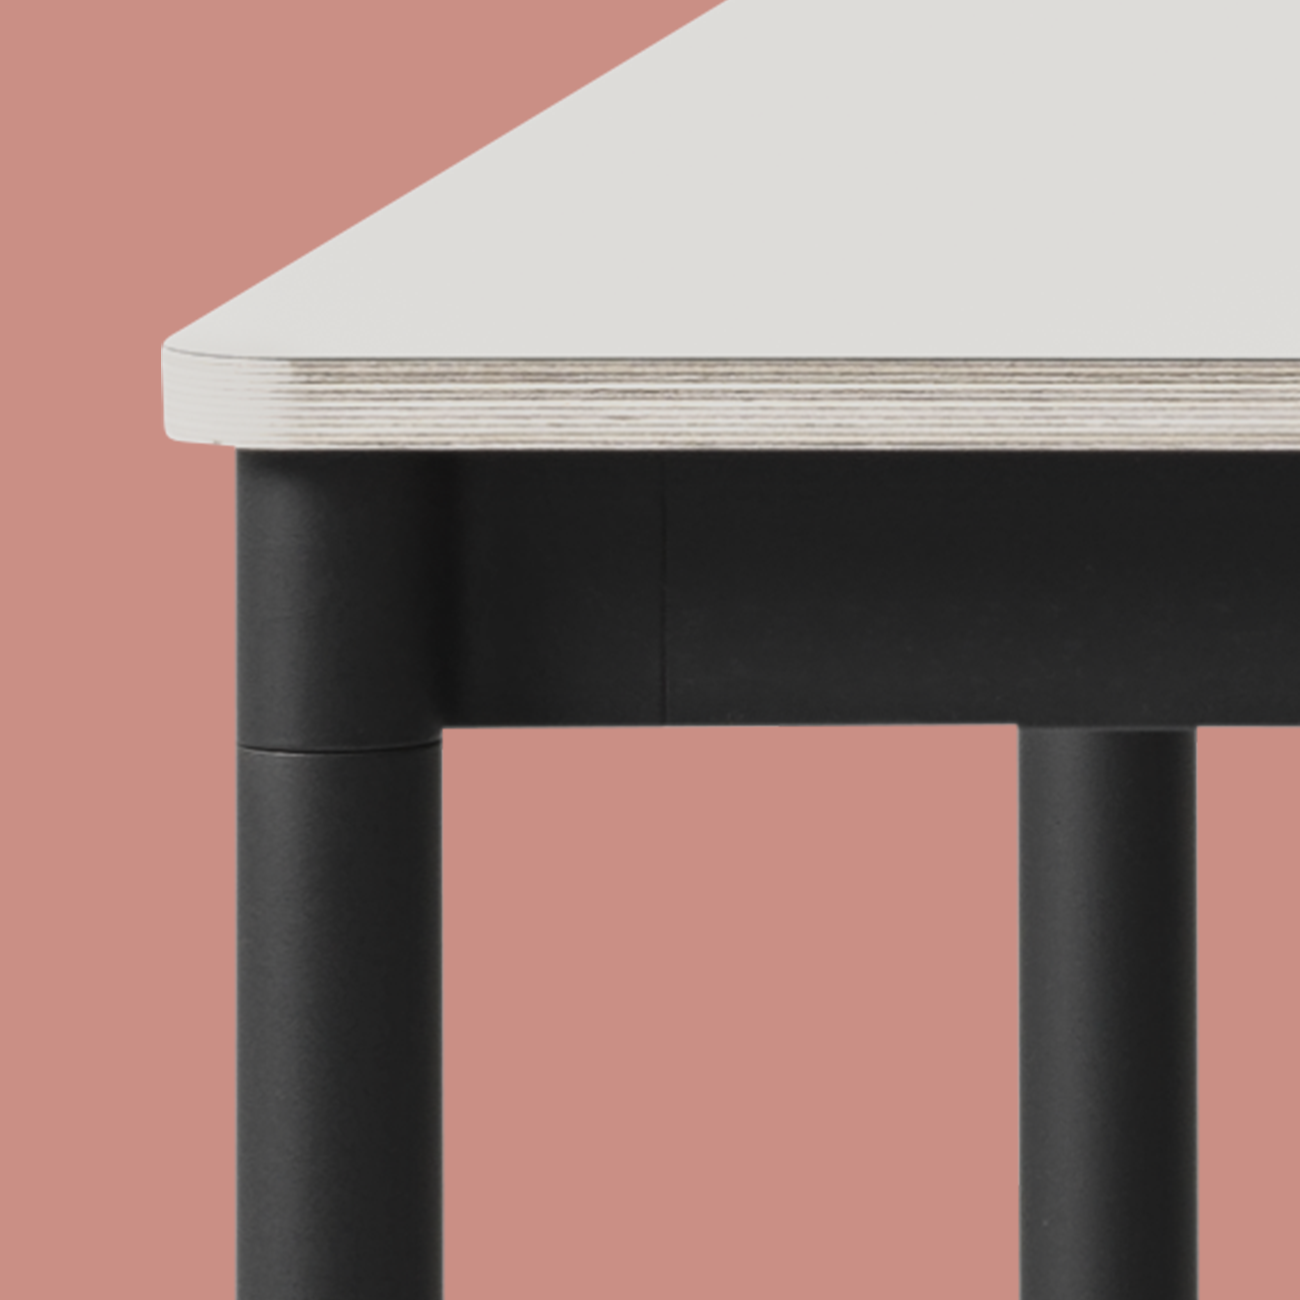 Base Tisch Square in Weiss / Schwarz präsentiert im Onlineshop von KAQTU Design AG. Schreibtisch ist von Muuto